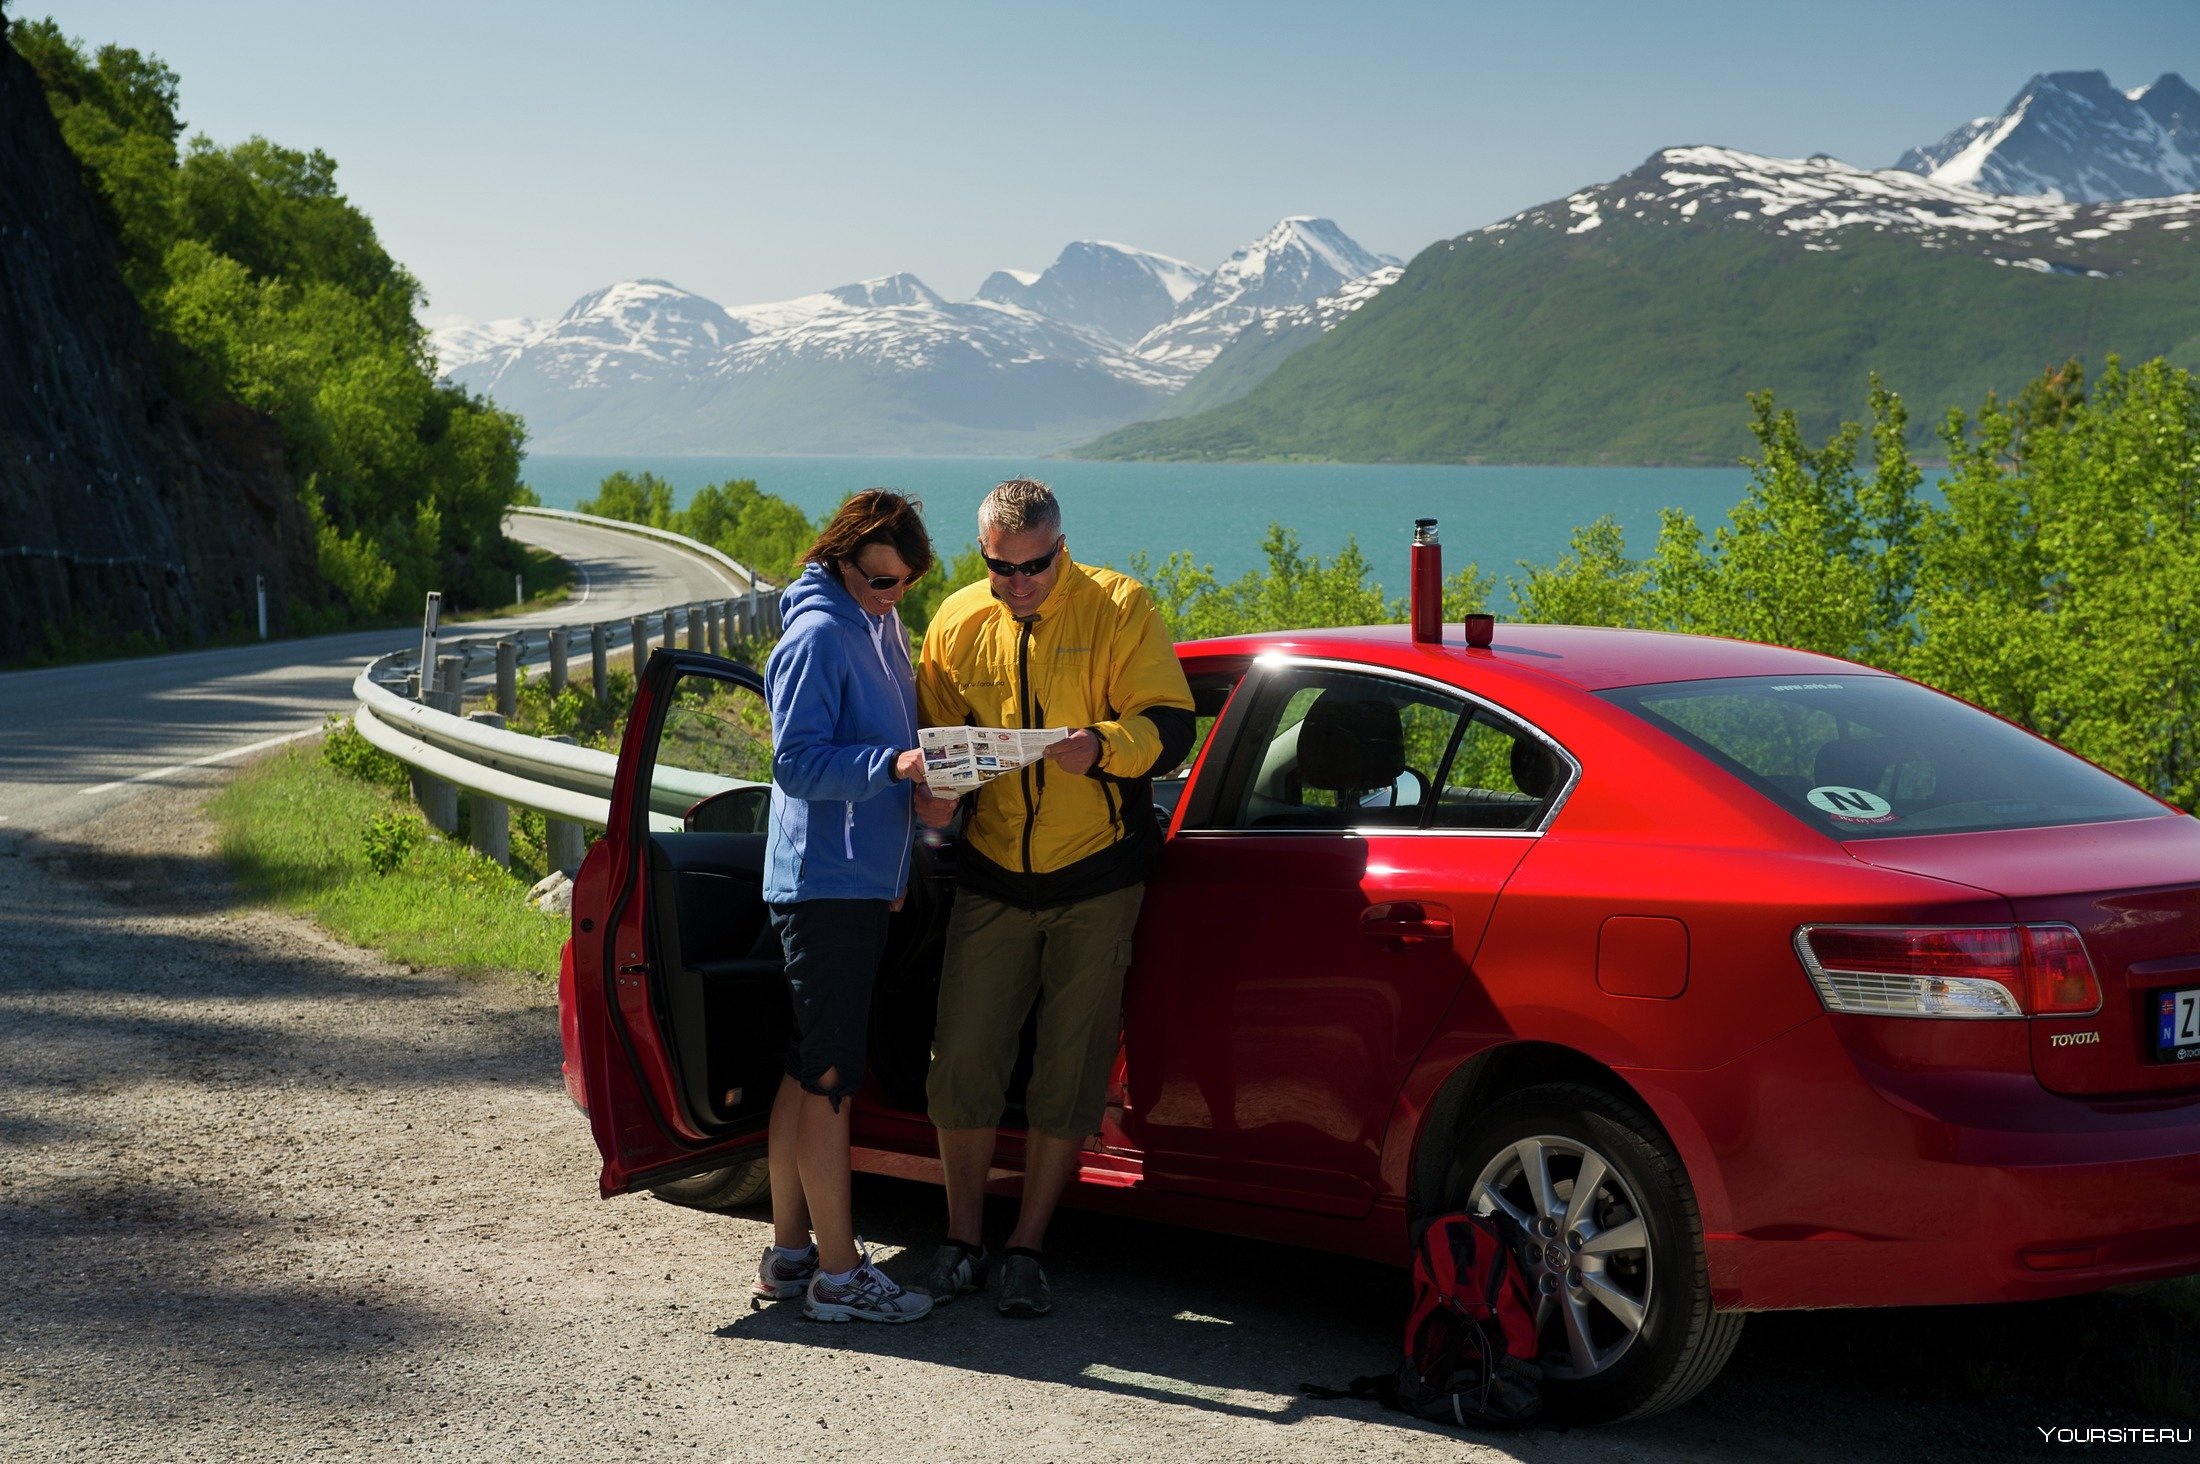 Автомобиль для личных целей. Путешествие на машине. Авто для путешествий. Машины в Норвегии. Путешествовать на автомобиле.